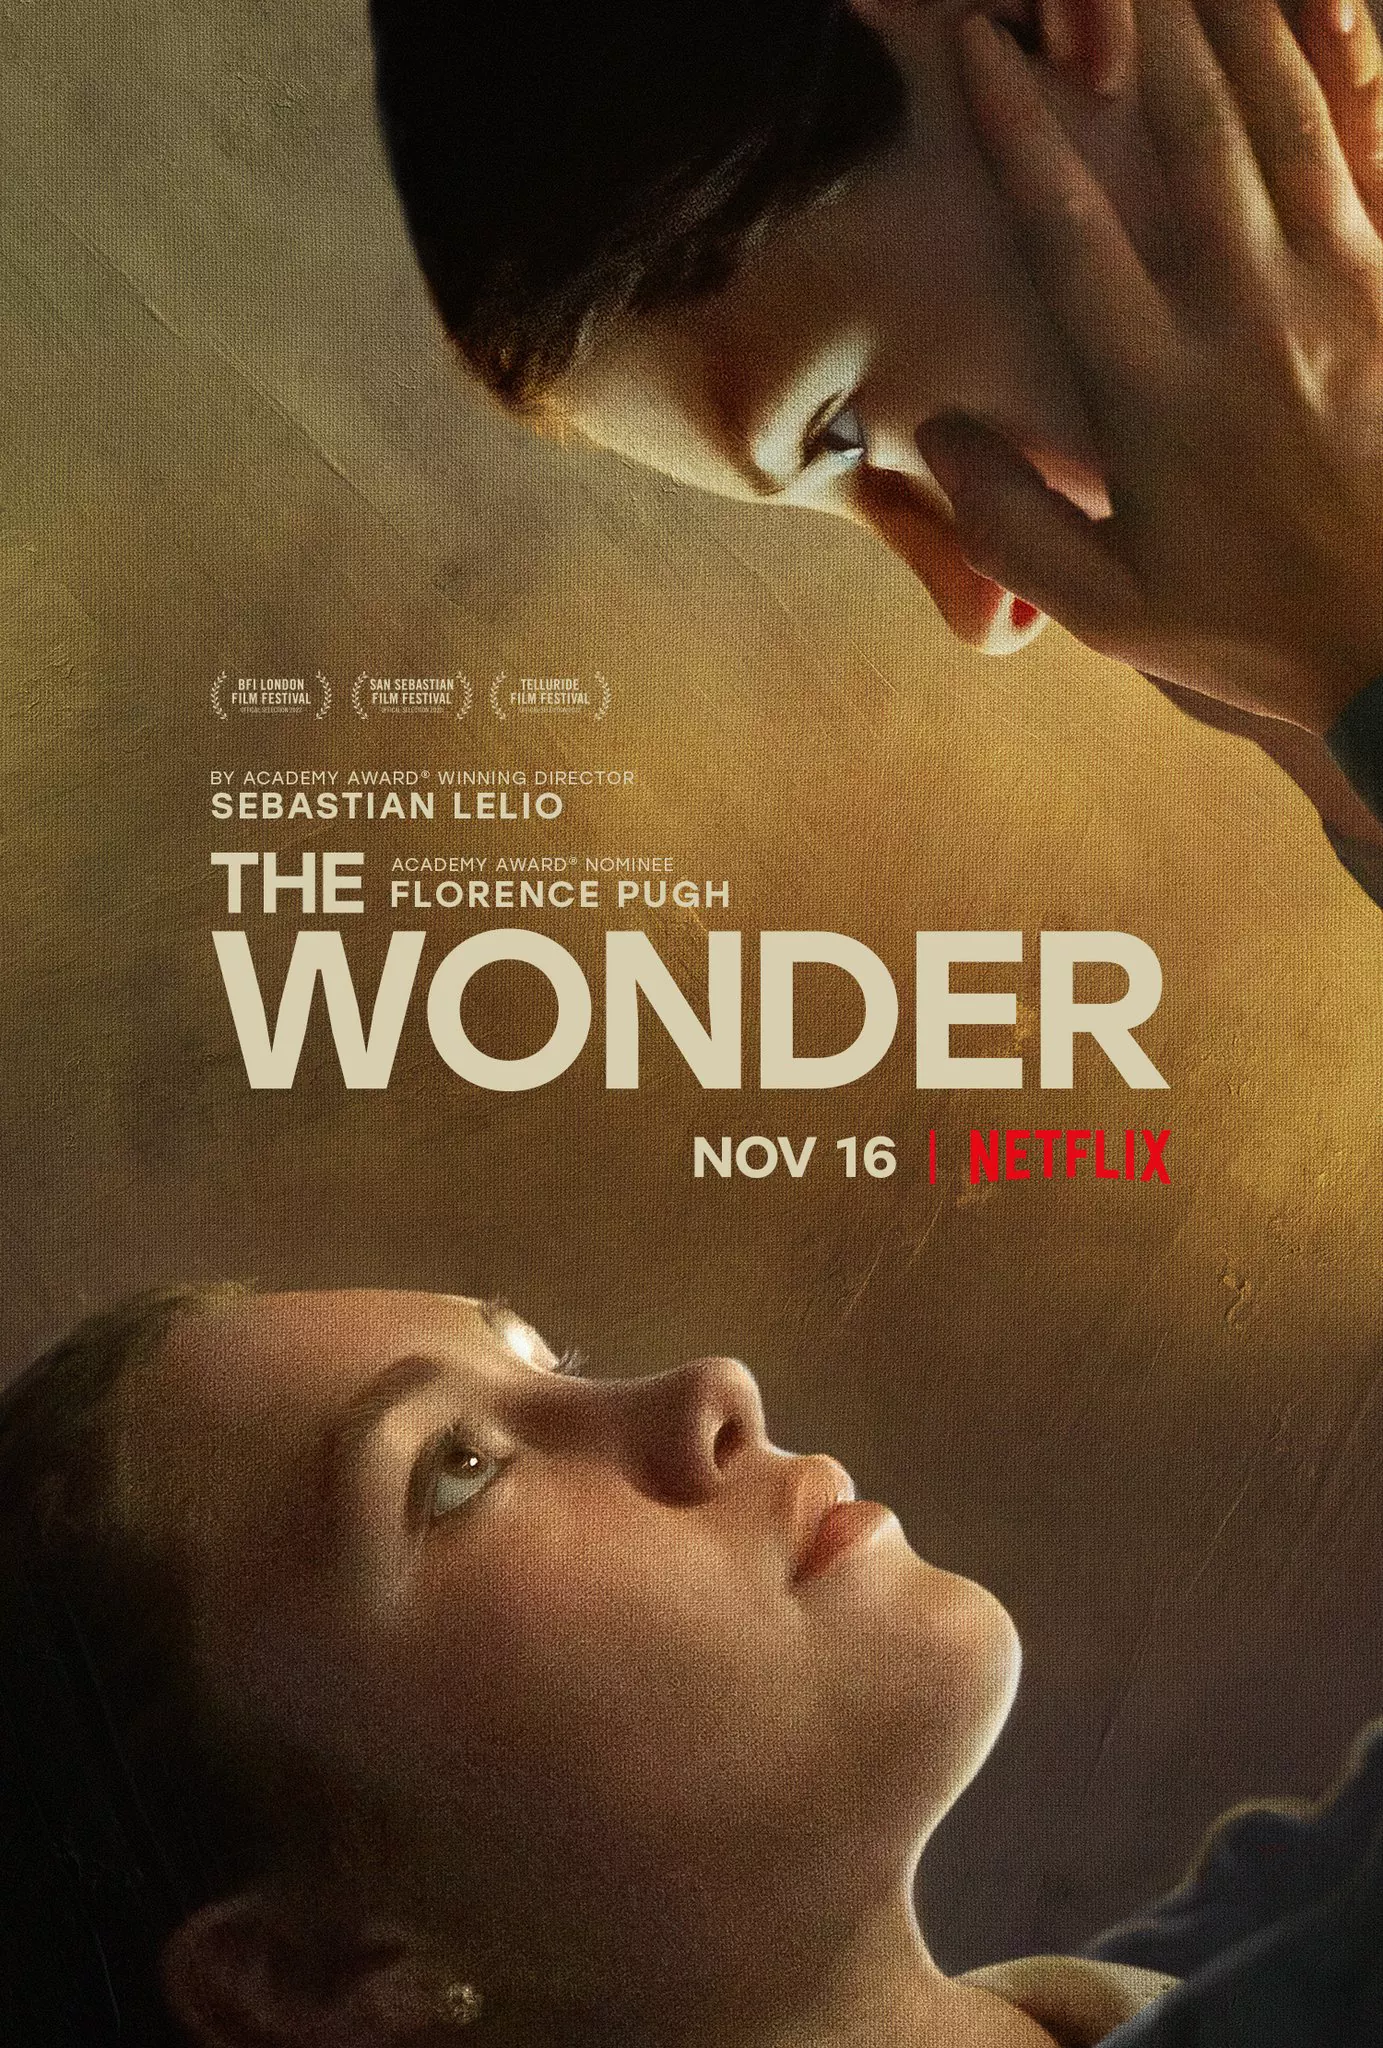 Trailer Από Το Θρίλερ Μυστηρίου "The Wonder"